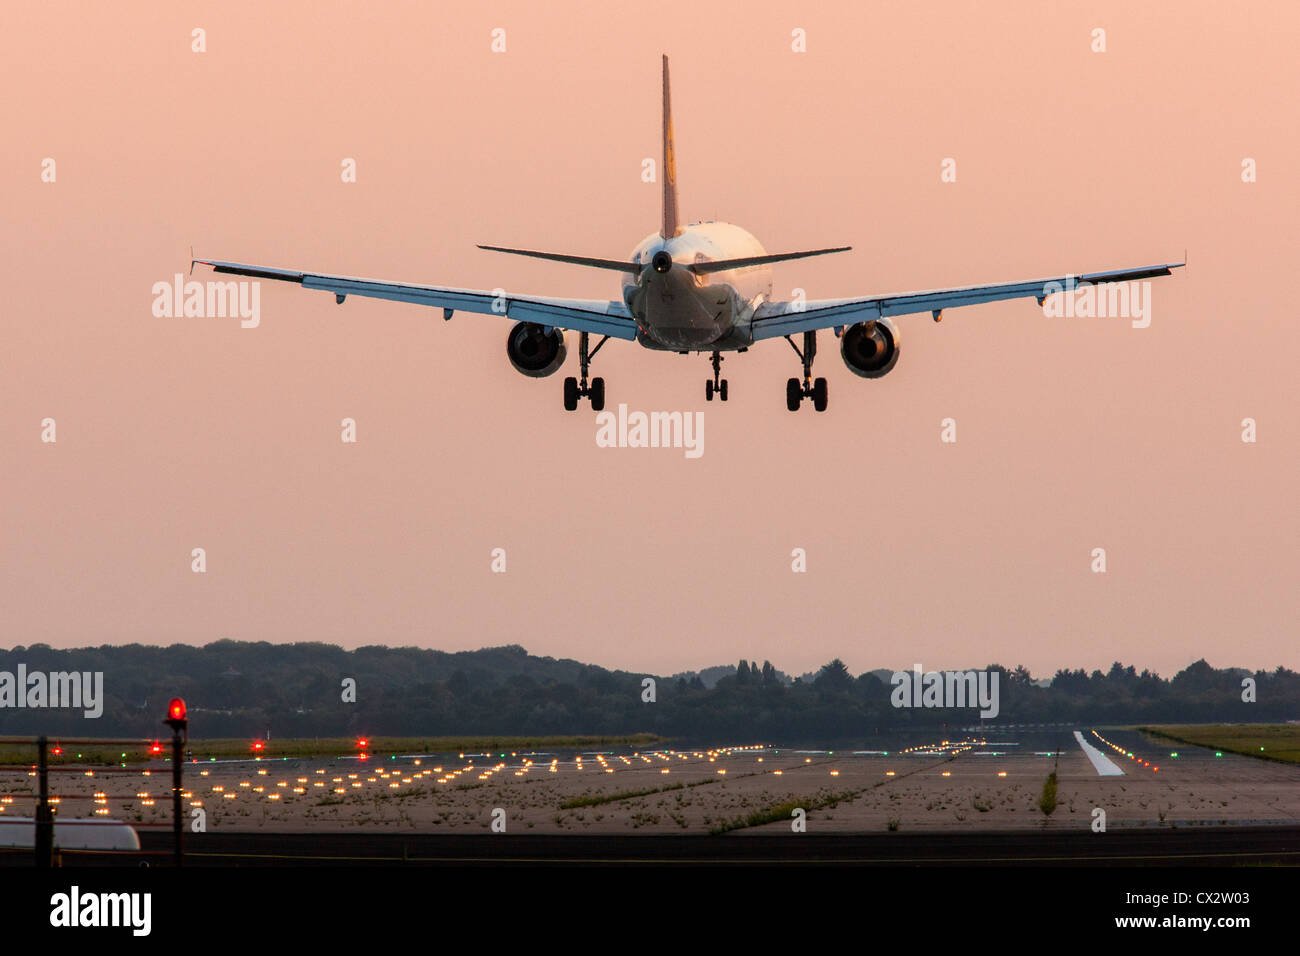 Avion de passagers près de l'Aéroport International de Düsseldorf. L'Allemagne. Banque D'Images